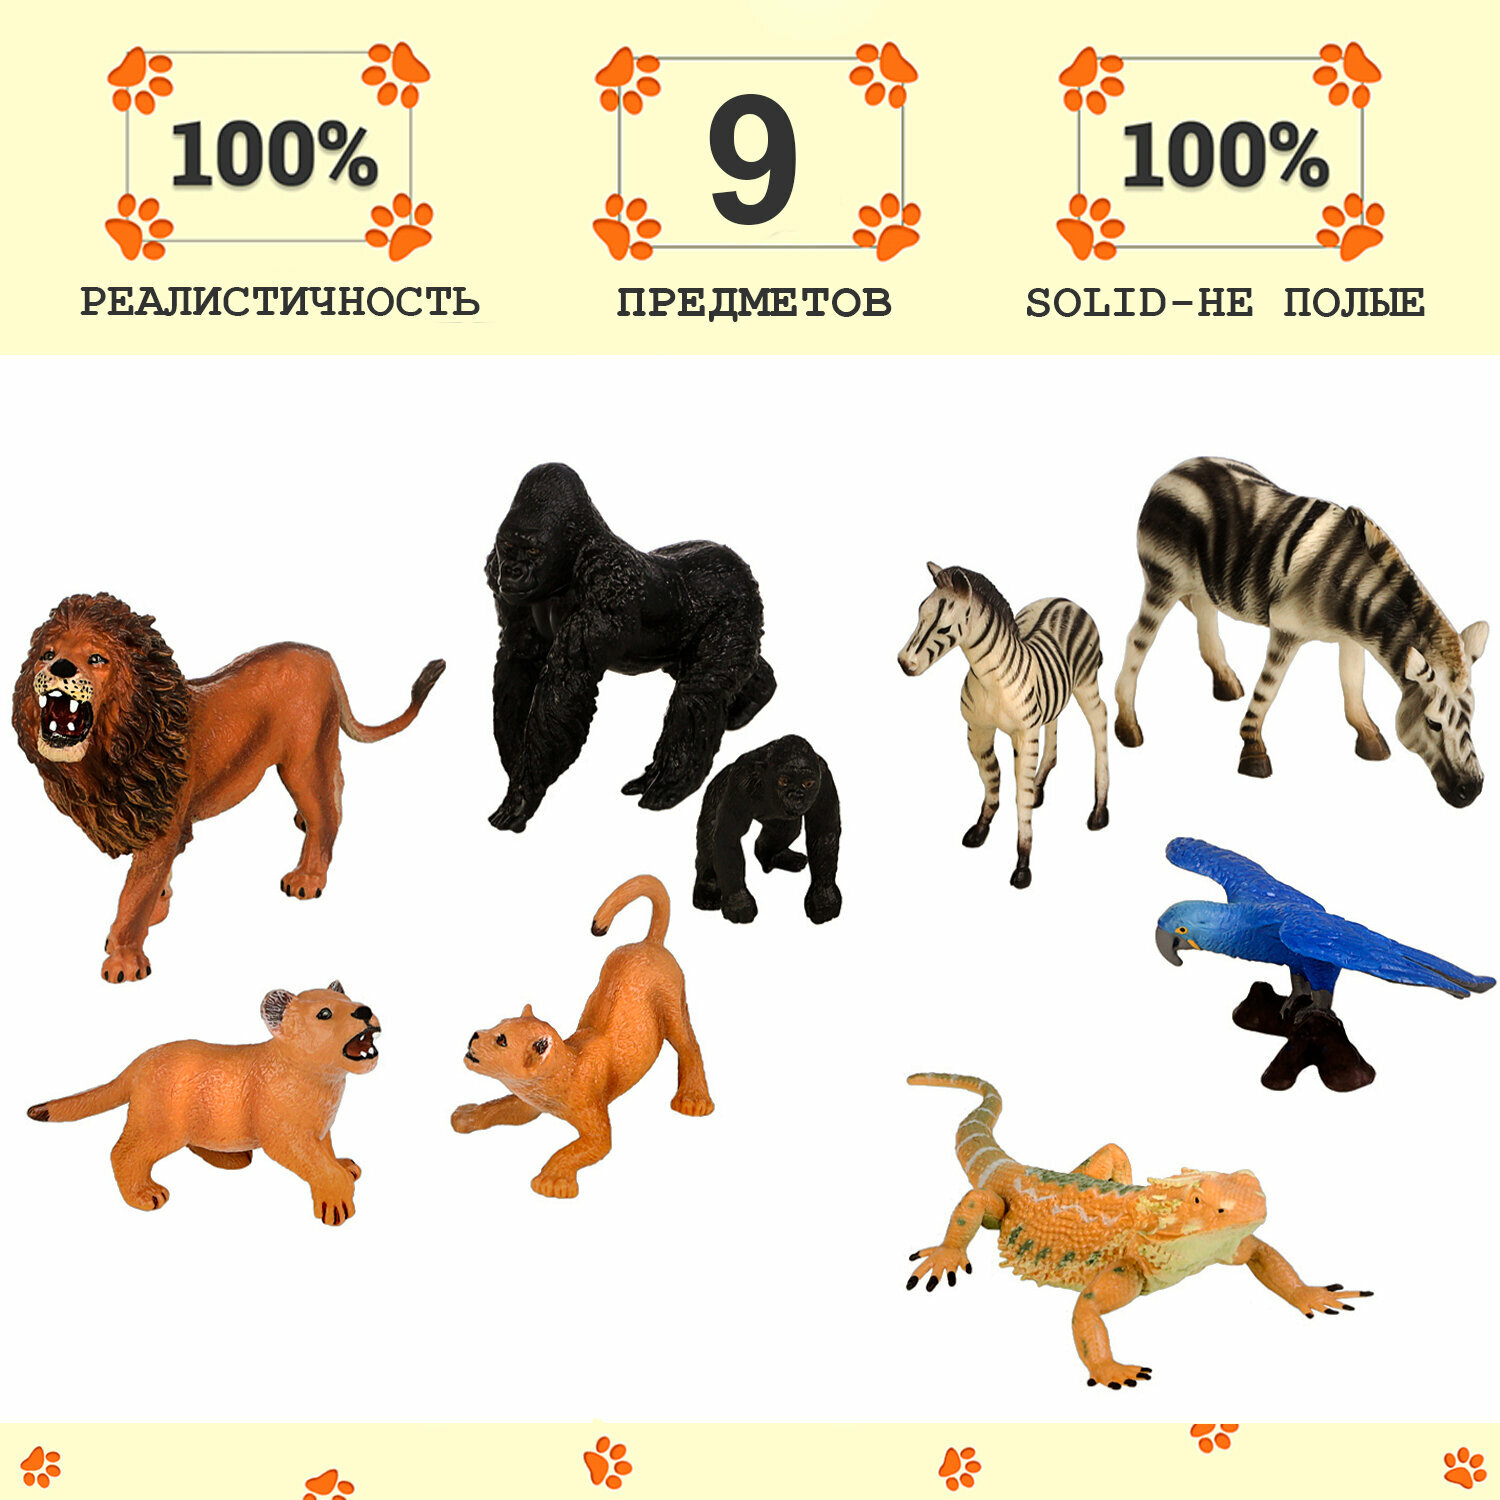 Набор фигурок животных серии "Мир диких животных": 2 зебры, 3 льва, попугай, варан, 2 гориллы (набор из 9 фигурок)